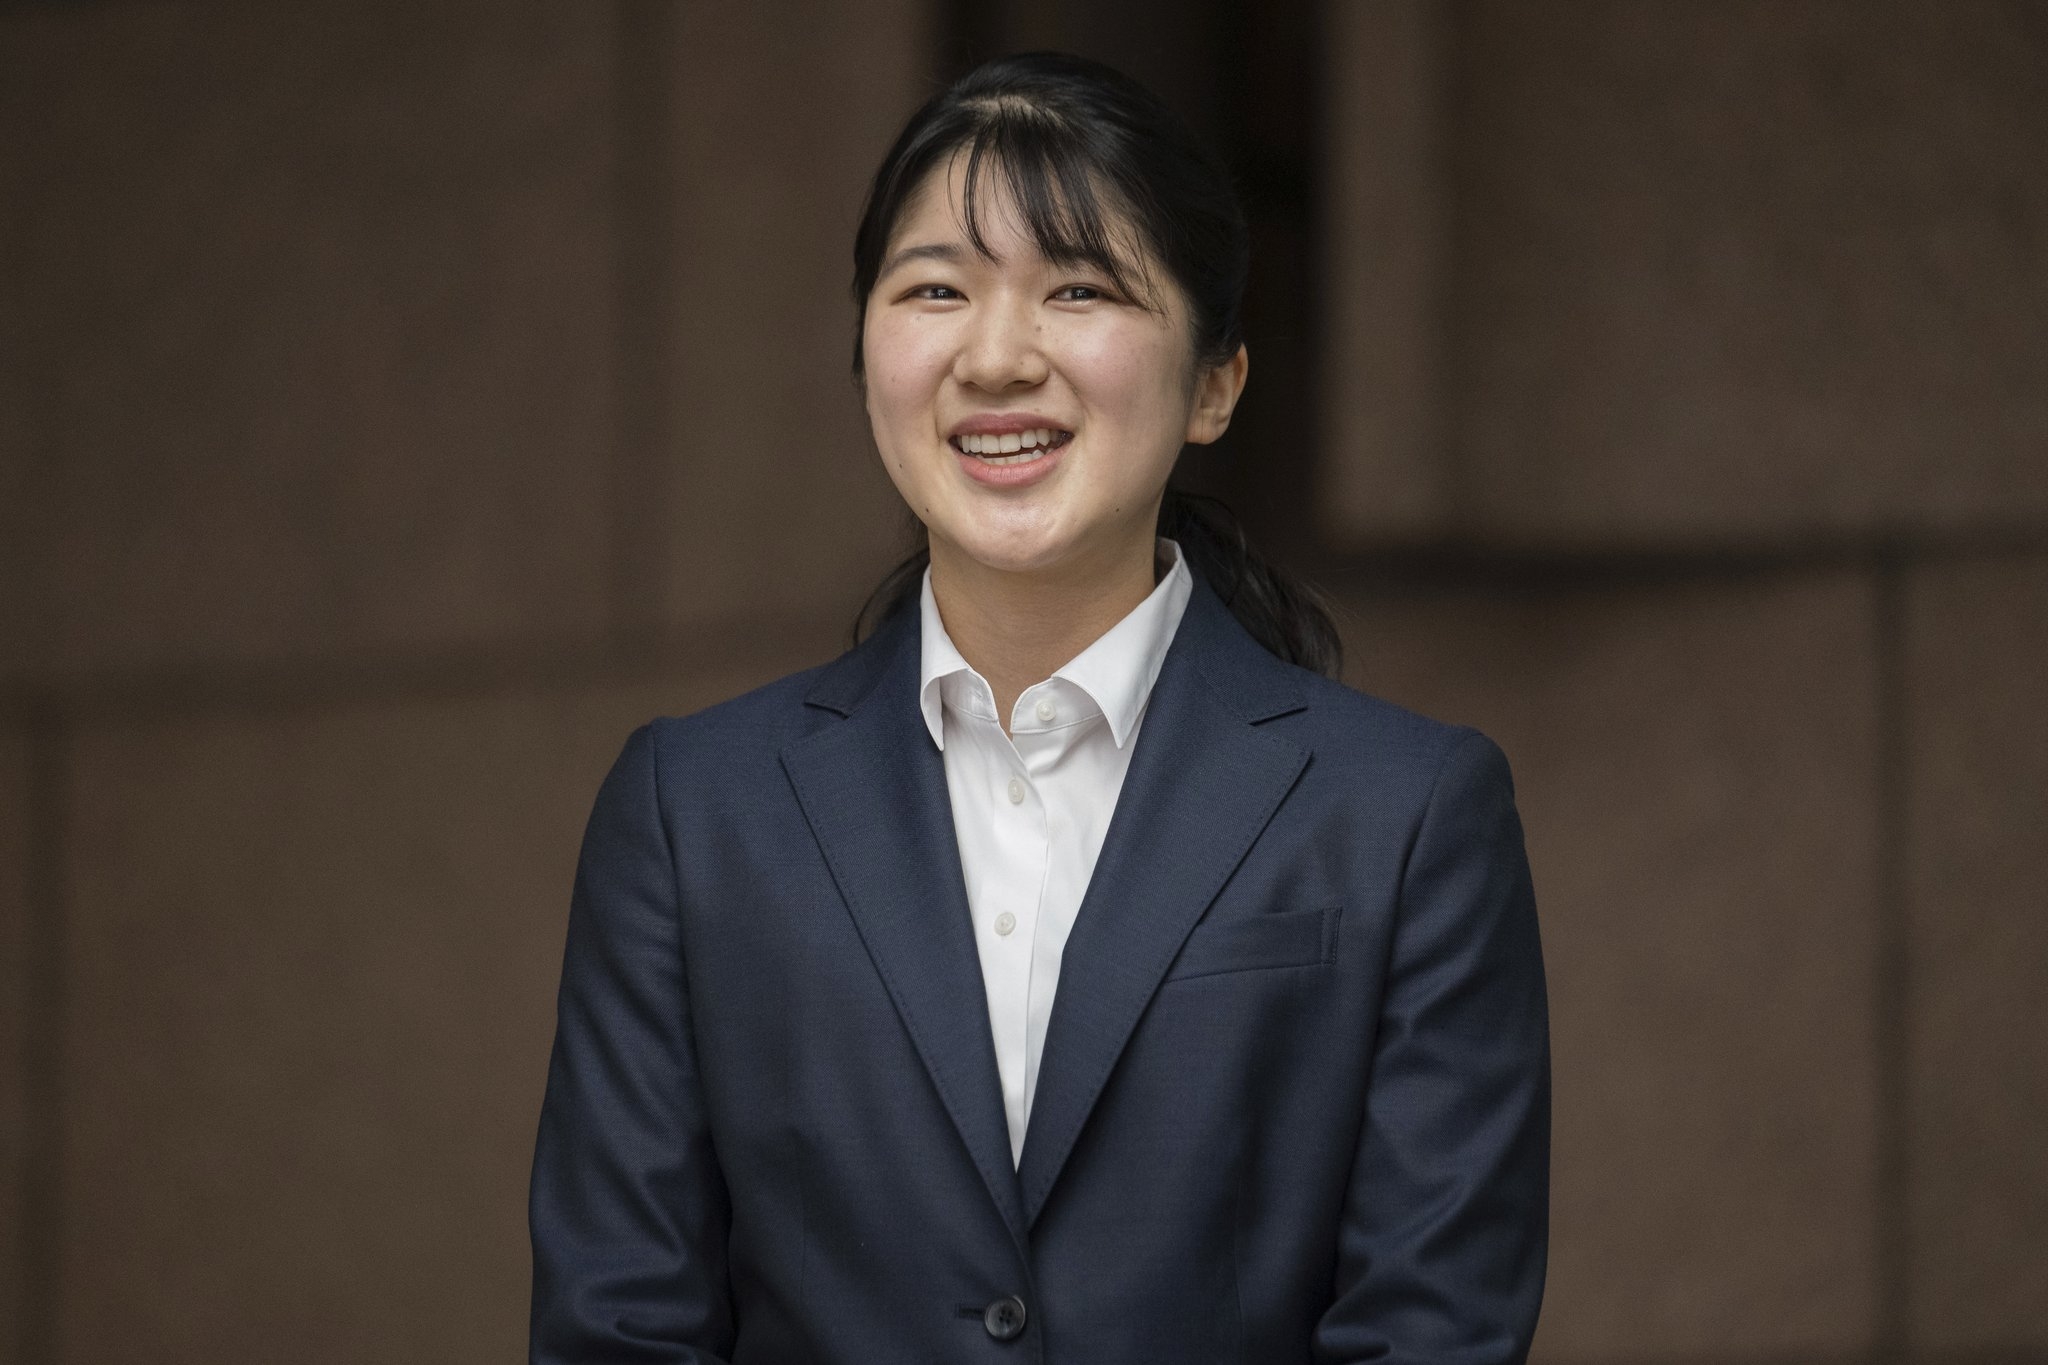 나루히토 일왕의 외동딸 아이코 공주가 1일 일본 적십자사에 첫 출근했다. AP=연합뉴스